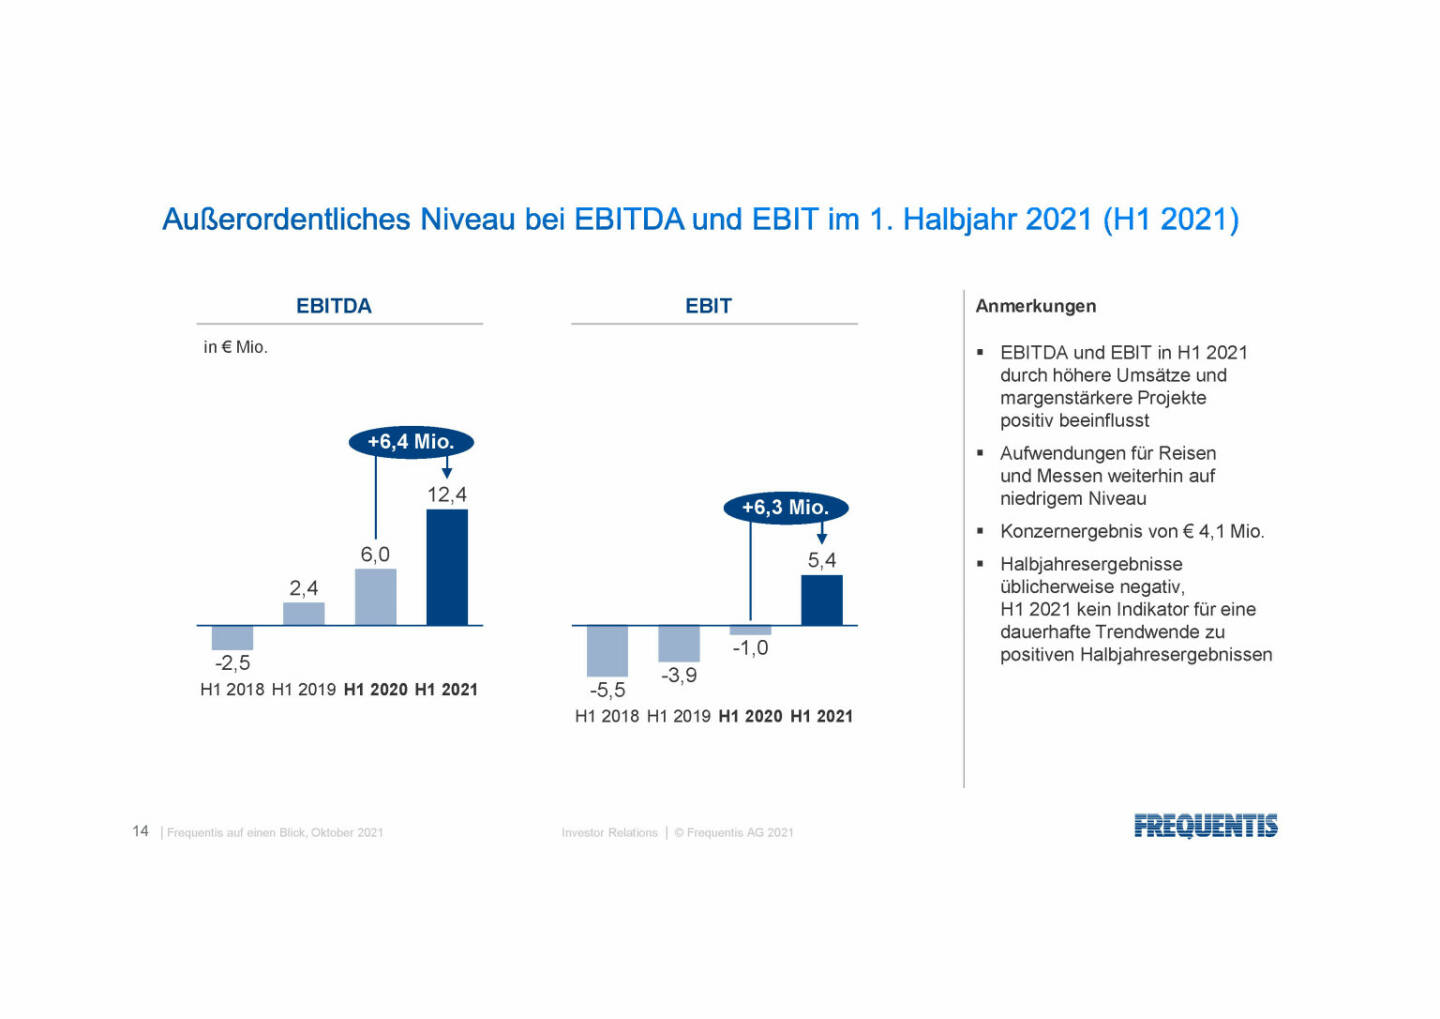 Frequentis - Außerordentliches Niveau EBITDA und EBIT 1. HJ 2021